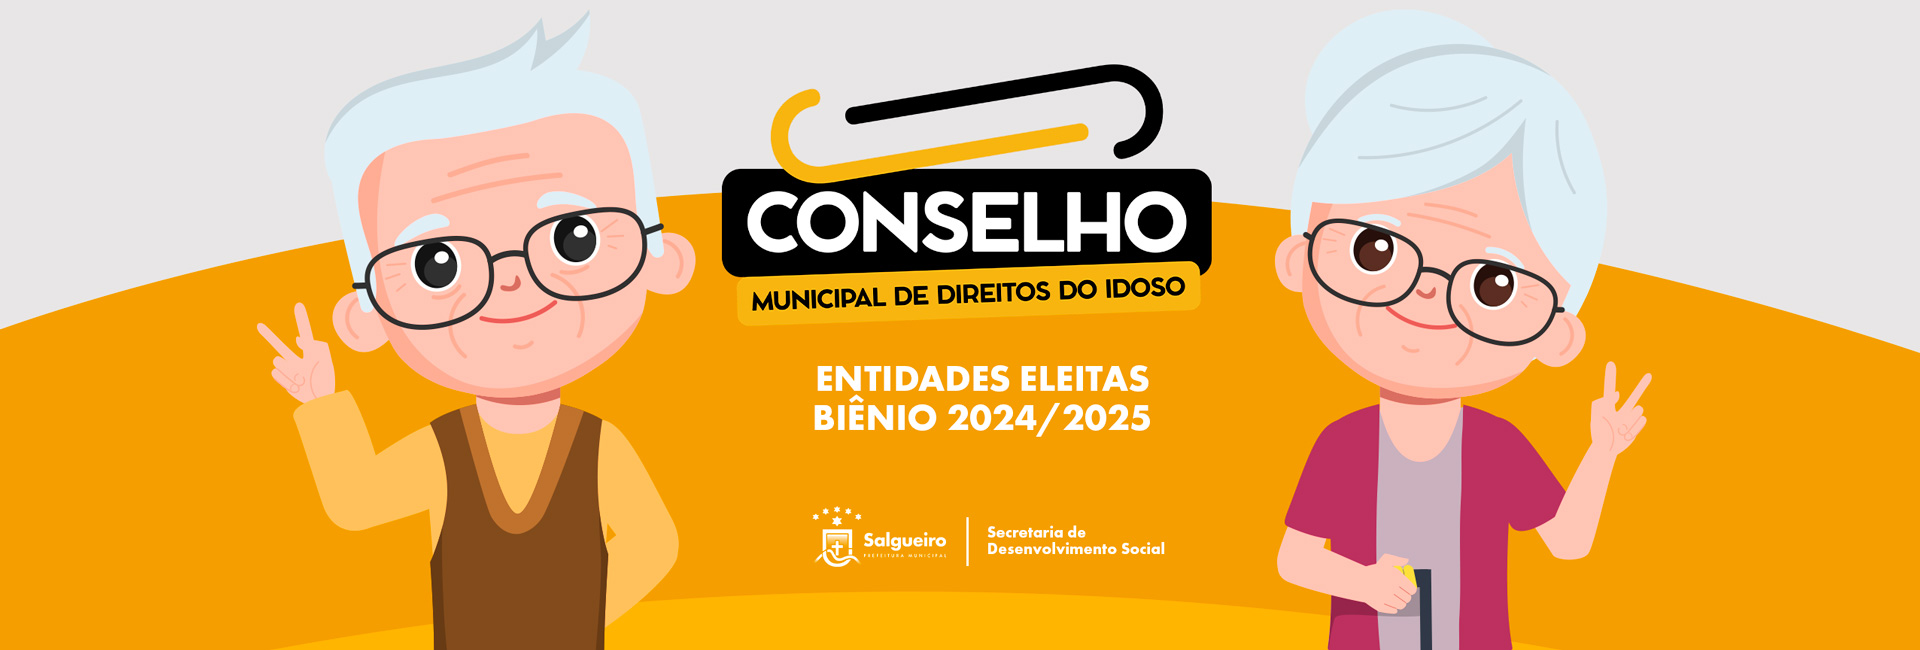 Escolha dos novos membros que irão compor o Conselho Municipal de Direitos do Idoso - CDMI no biênio 2024/2025.